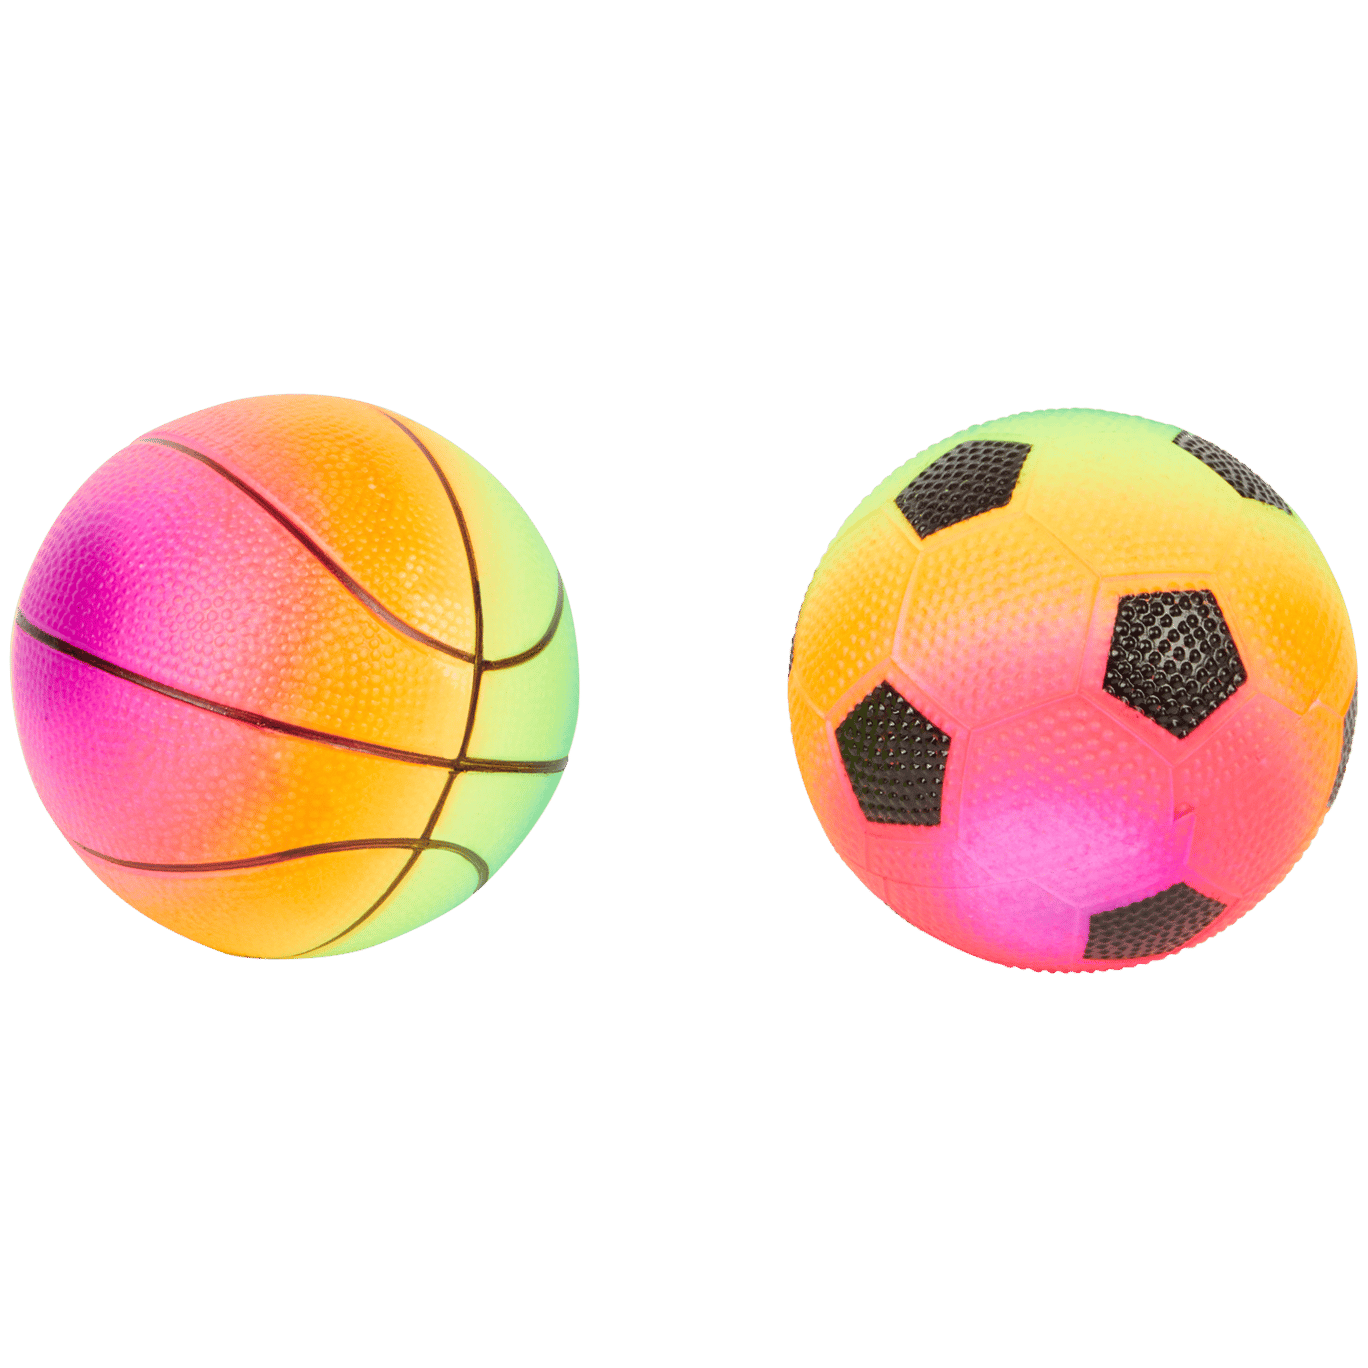 Regenbogenball